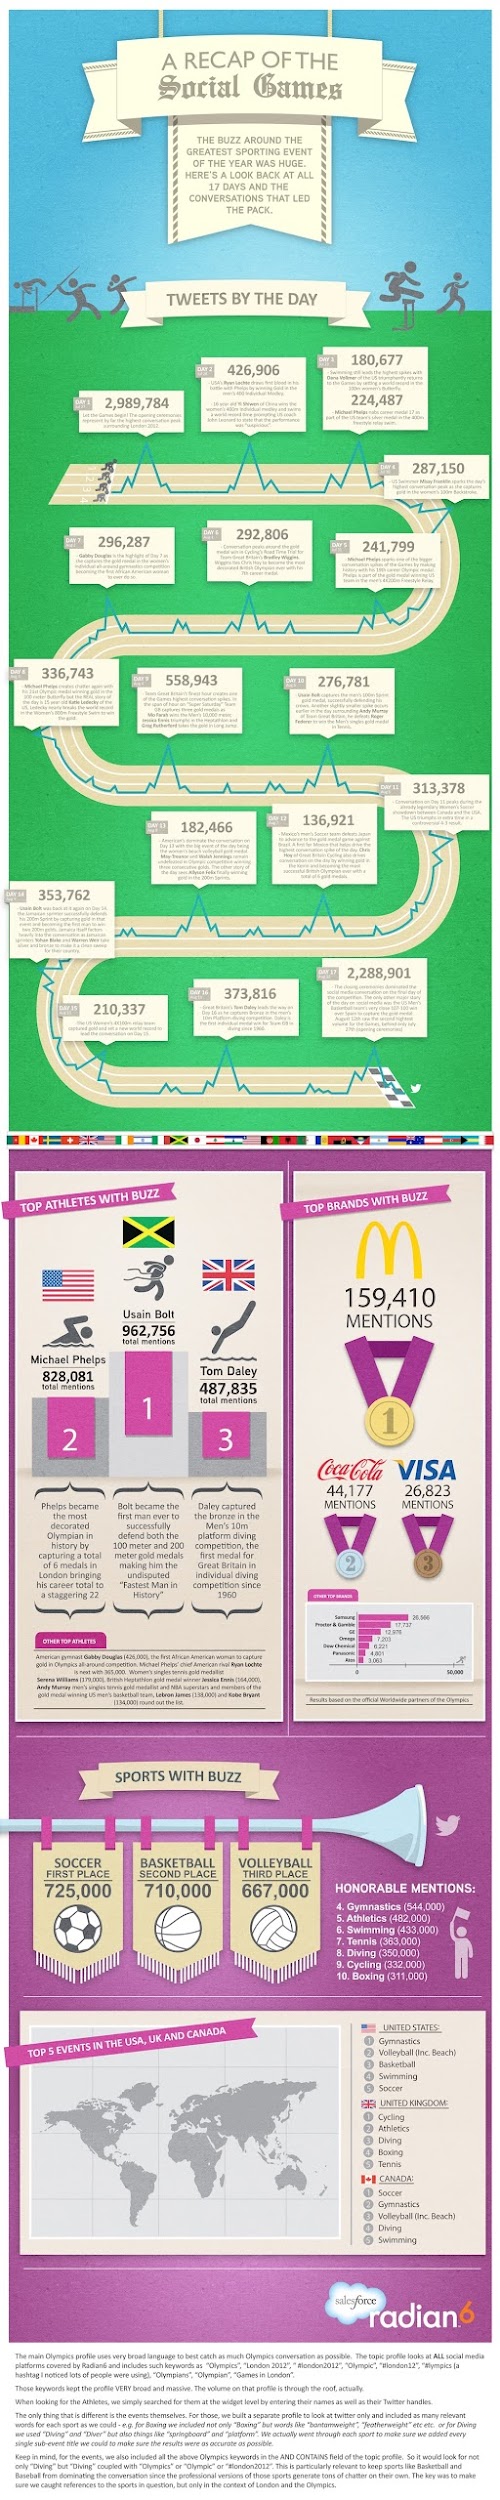 Infographie : JO 2012 et les réseaux sociaux